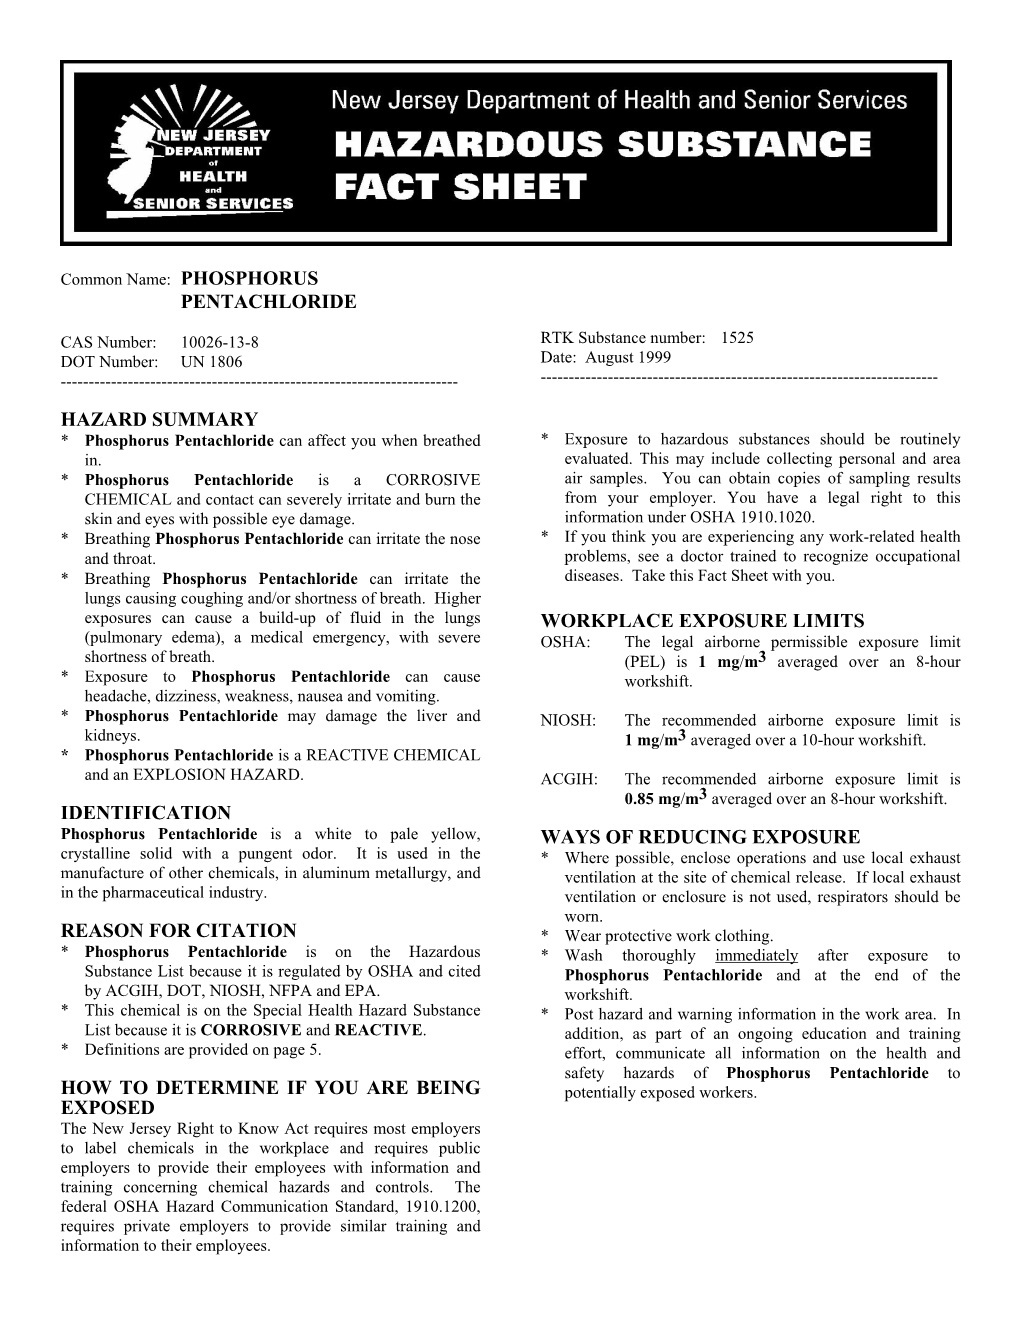 Pentachloride Hazard Summary Identification